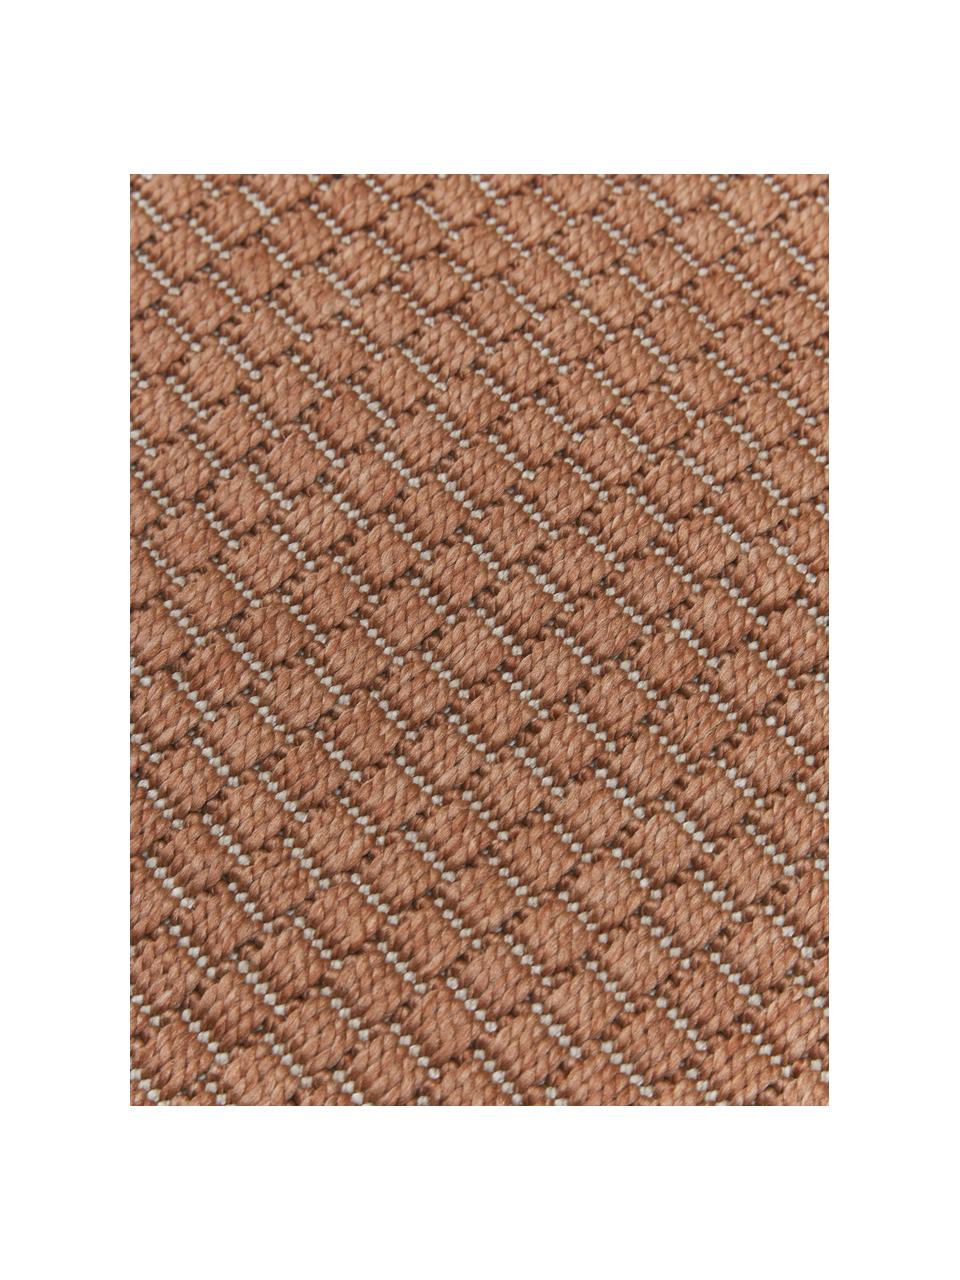 Okrągły dywan wewnętrzny/zewnętrzny Toronto, 100% polipropylen, Terakota, Ø 120 cm (Rozmiar S)